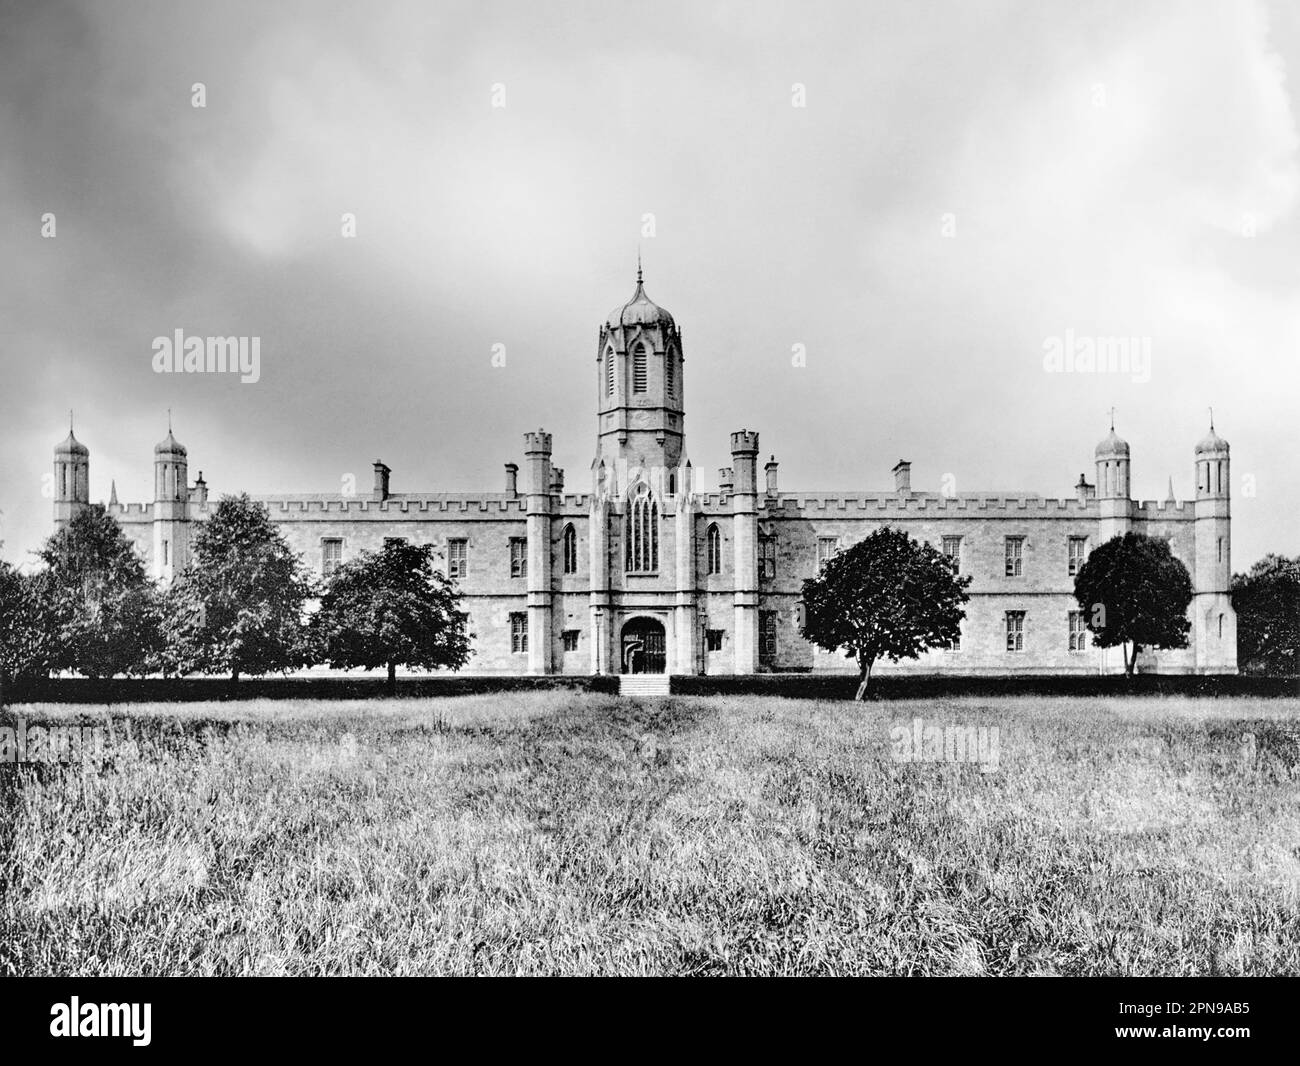 Das Tudor-Gothic Queens College, Galway, Irland, aus dem späten 19. Jahrhundert. Es wurde vom Architekten J B Keane entworfen und 1849 fertiggestellt. Es ist offenbar eine Nachbildung der Christ Church, eines der Gebäude auf dem Campus der Universität Oxford. Jetzt nur noch eines der Gebäude auf dem Campus der Universität von Galway. Stockfoto